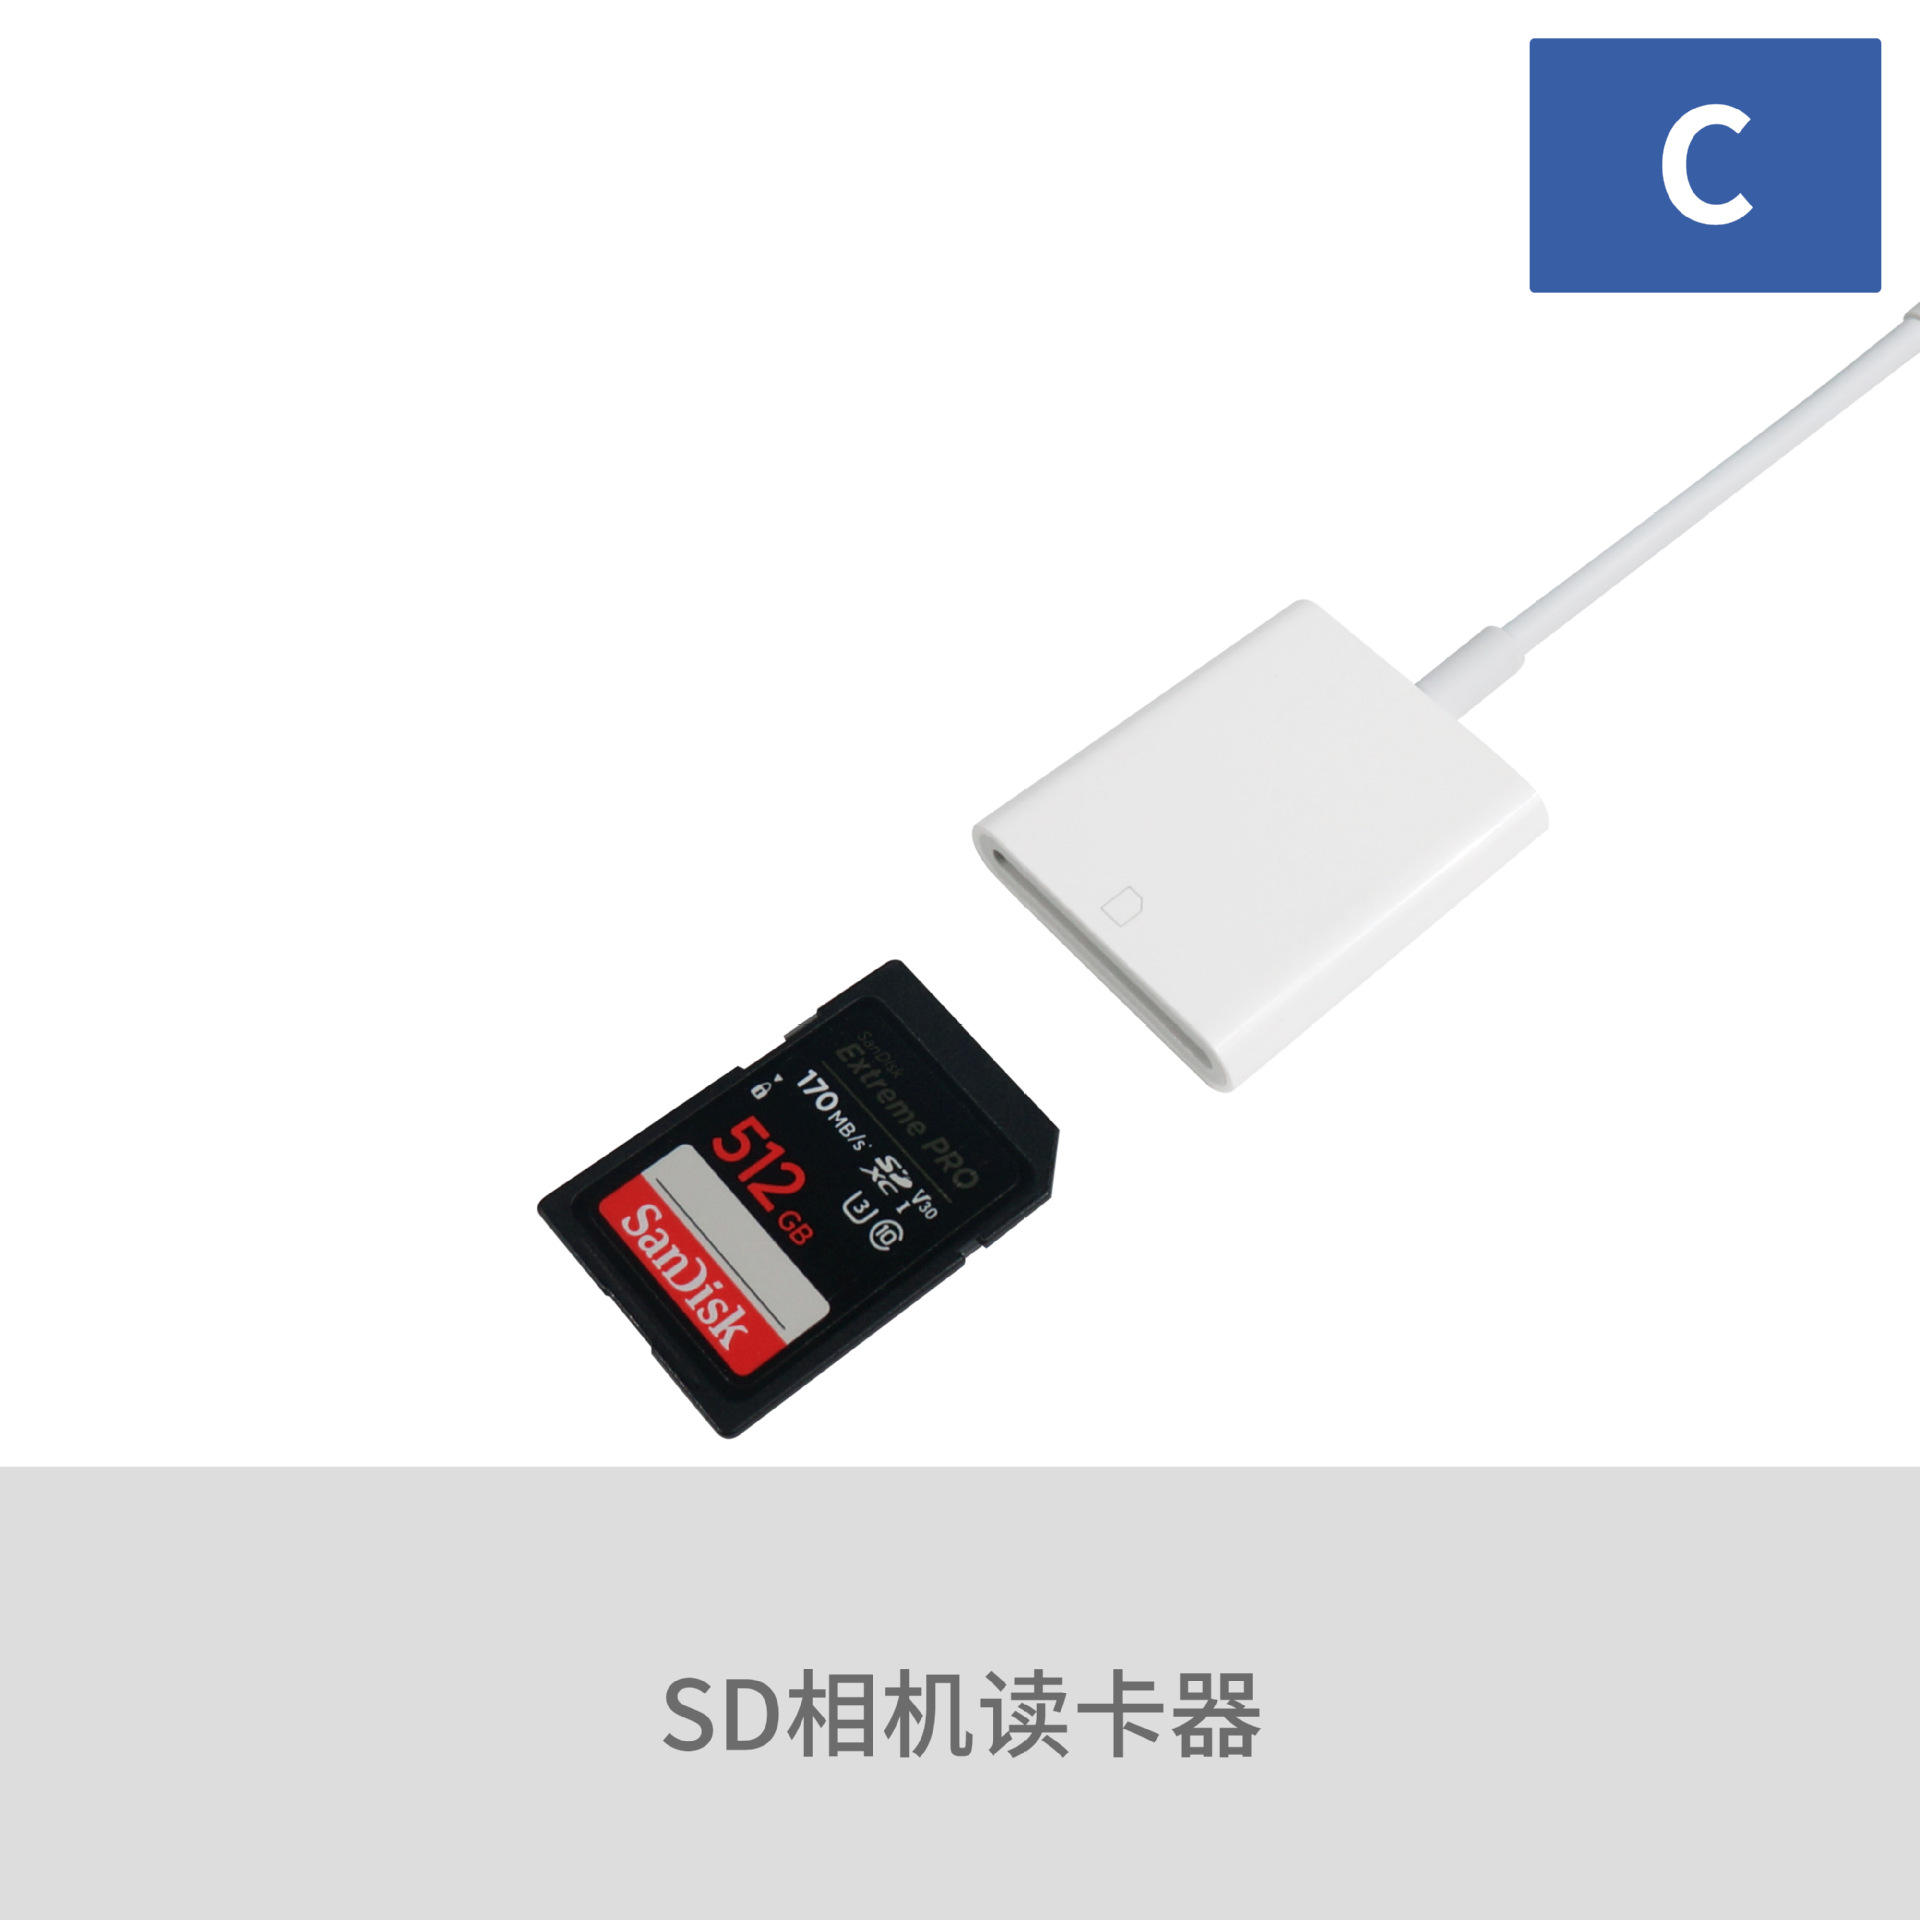 厂家直销Type-C SD卡读卡器华为iPad Pro手机电脑平板OTG读卡器|ms